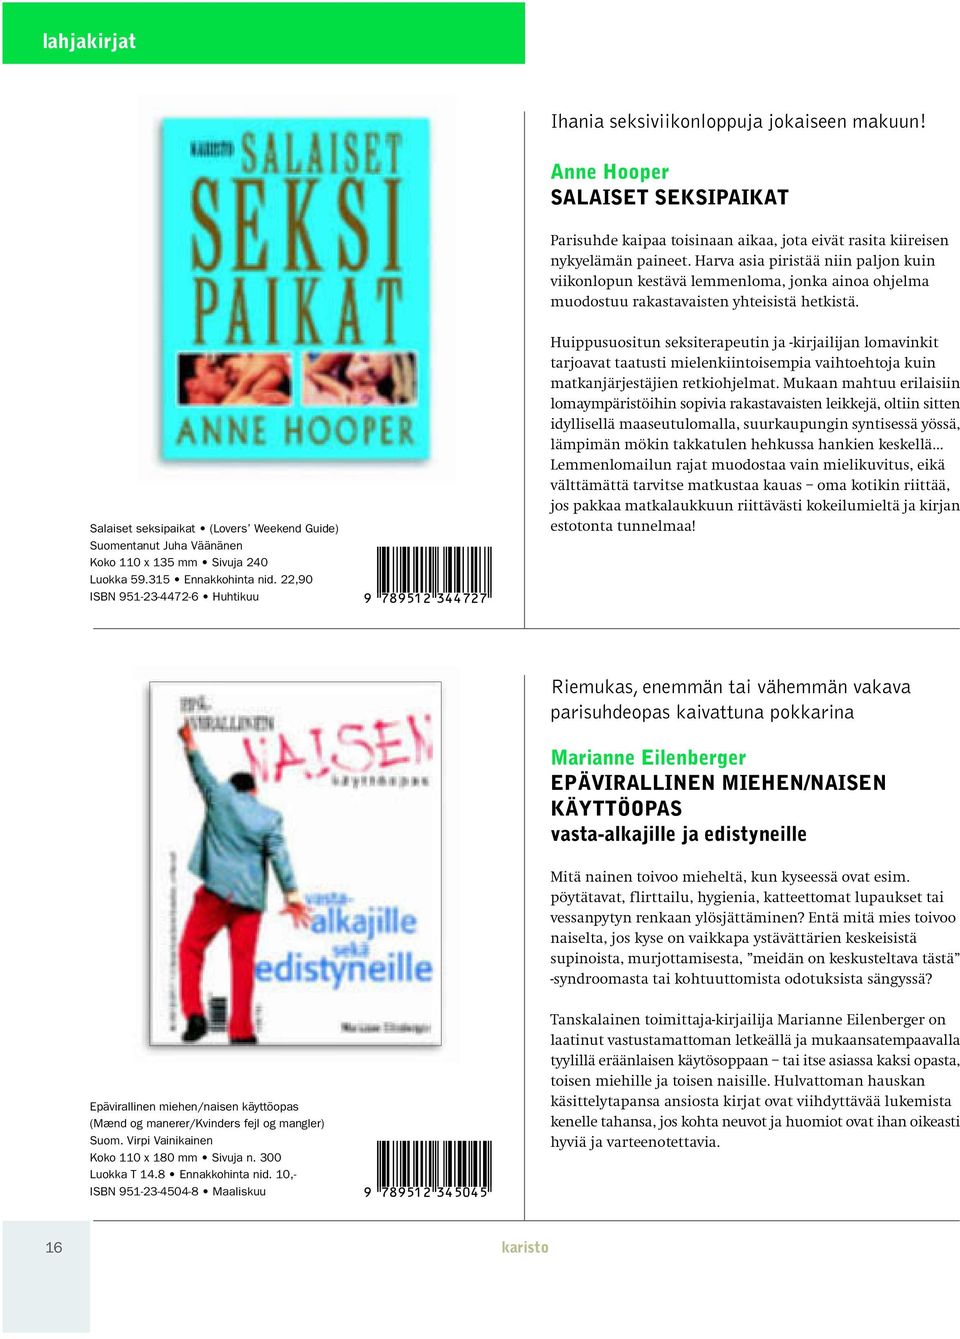 Salaiset seksipaikat (Lovers Weekend Guide) Suomentanut Juha Väänänen Koko 110 x 135 mm Sivuja 240 Luokka 59.315 Ennakkohinta nid.